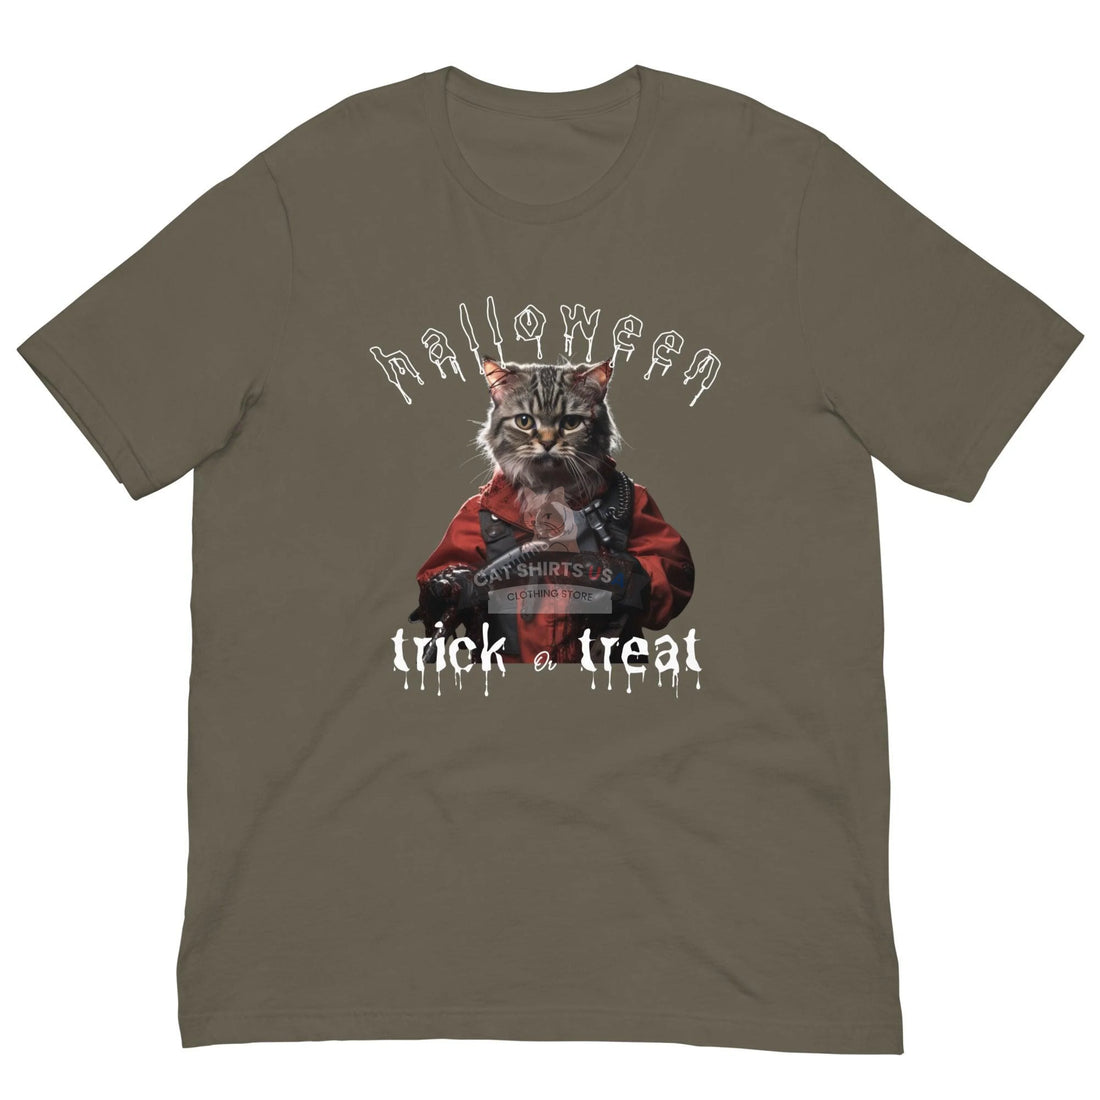 Trick or Treat Halloween Cat Shirt - Cat Shirts USA